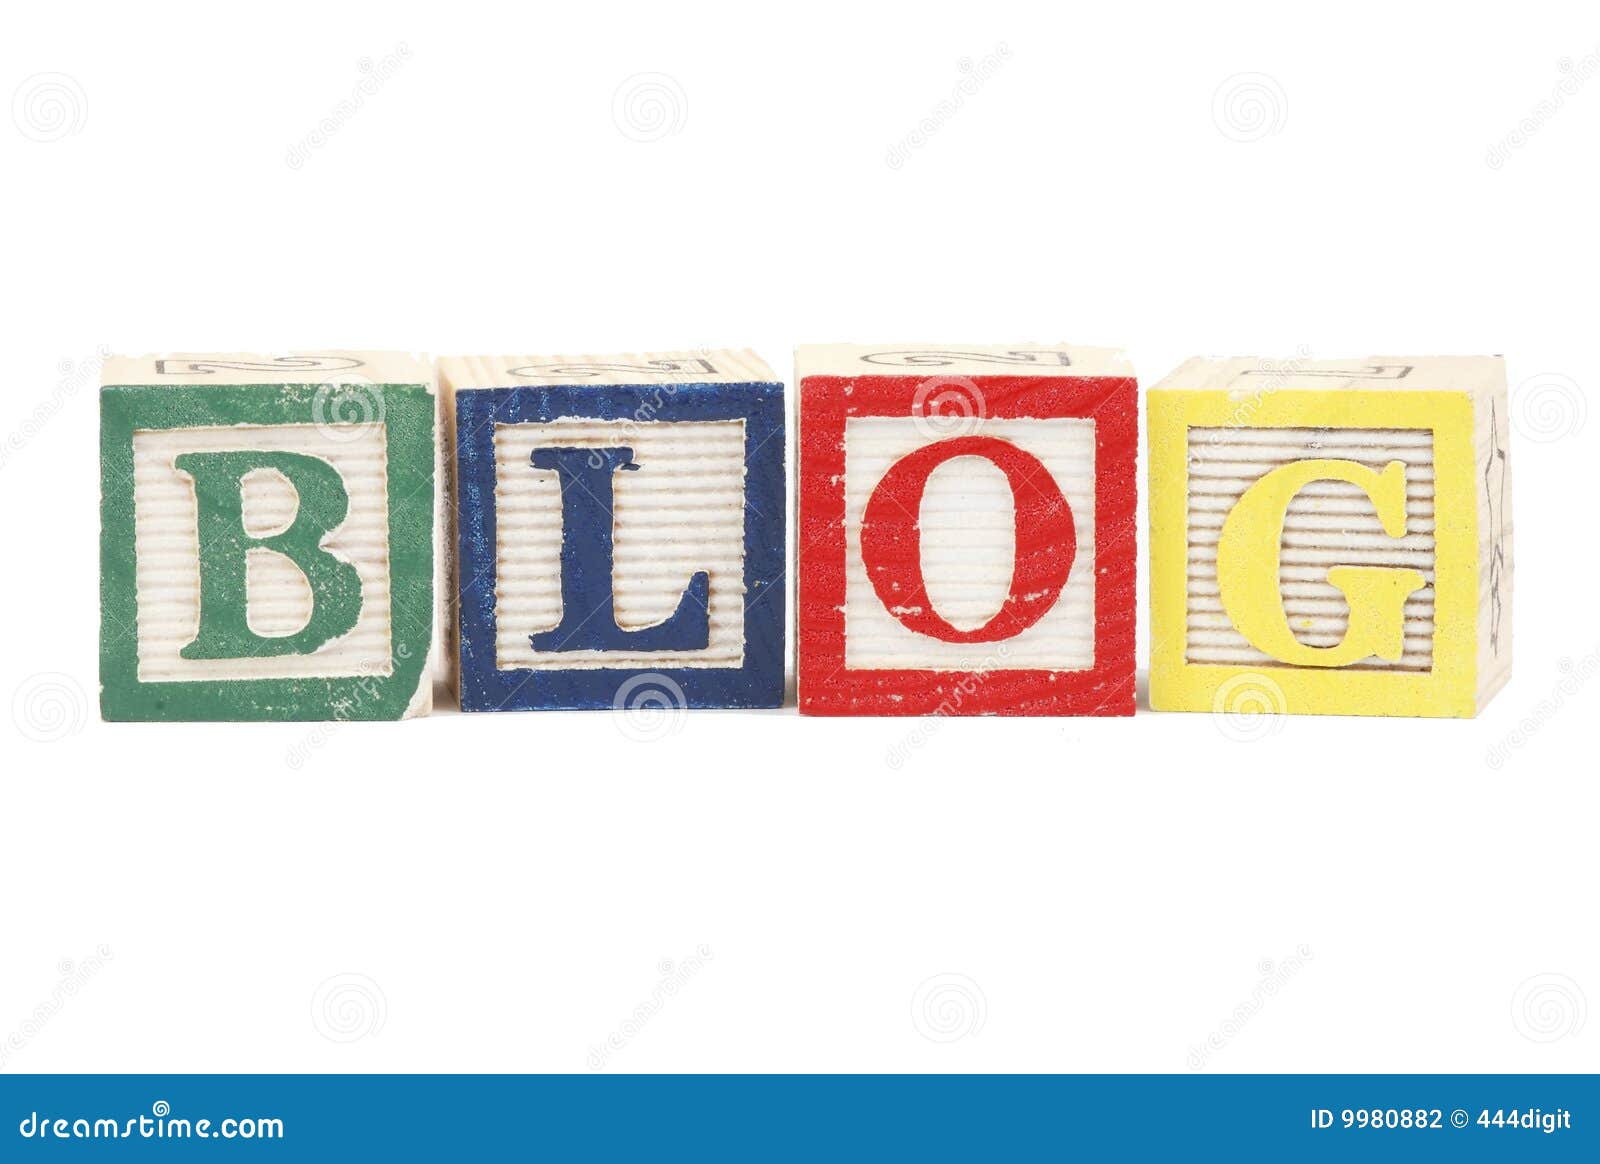 Titre de blog. L'alphabet bloque le charme de lettres de blog